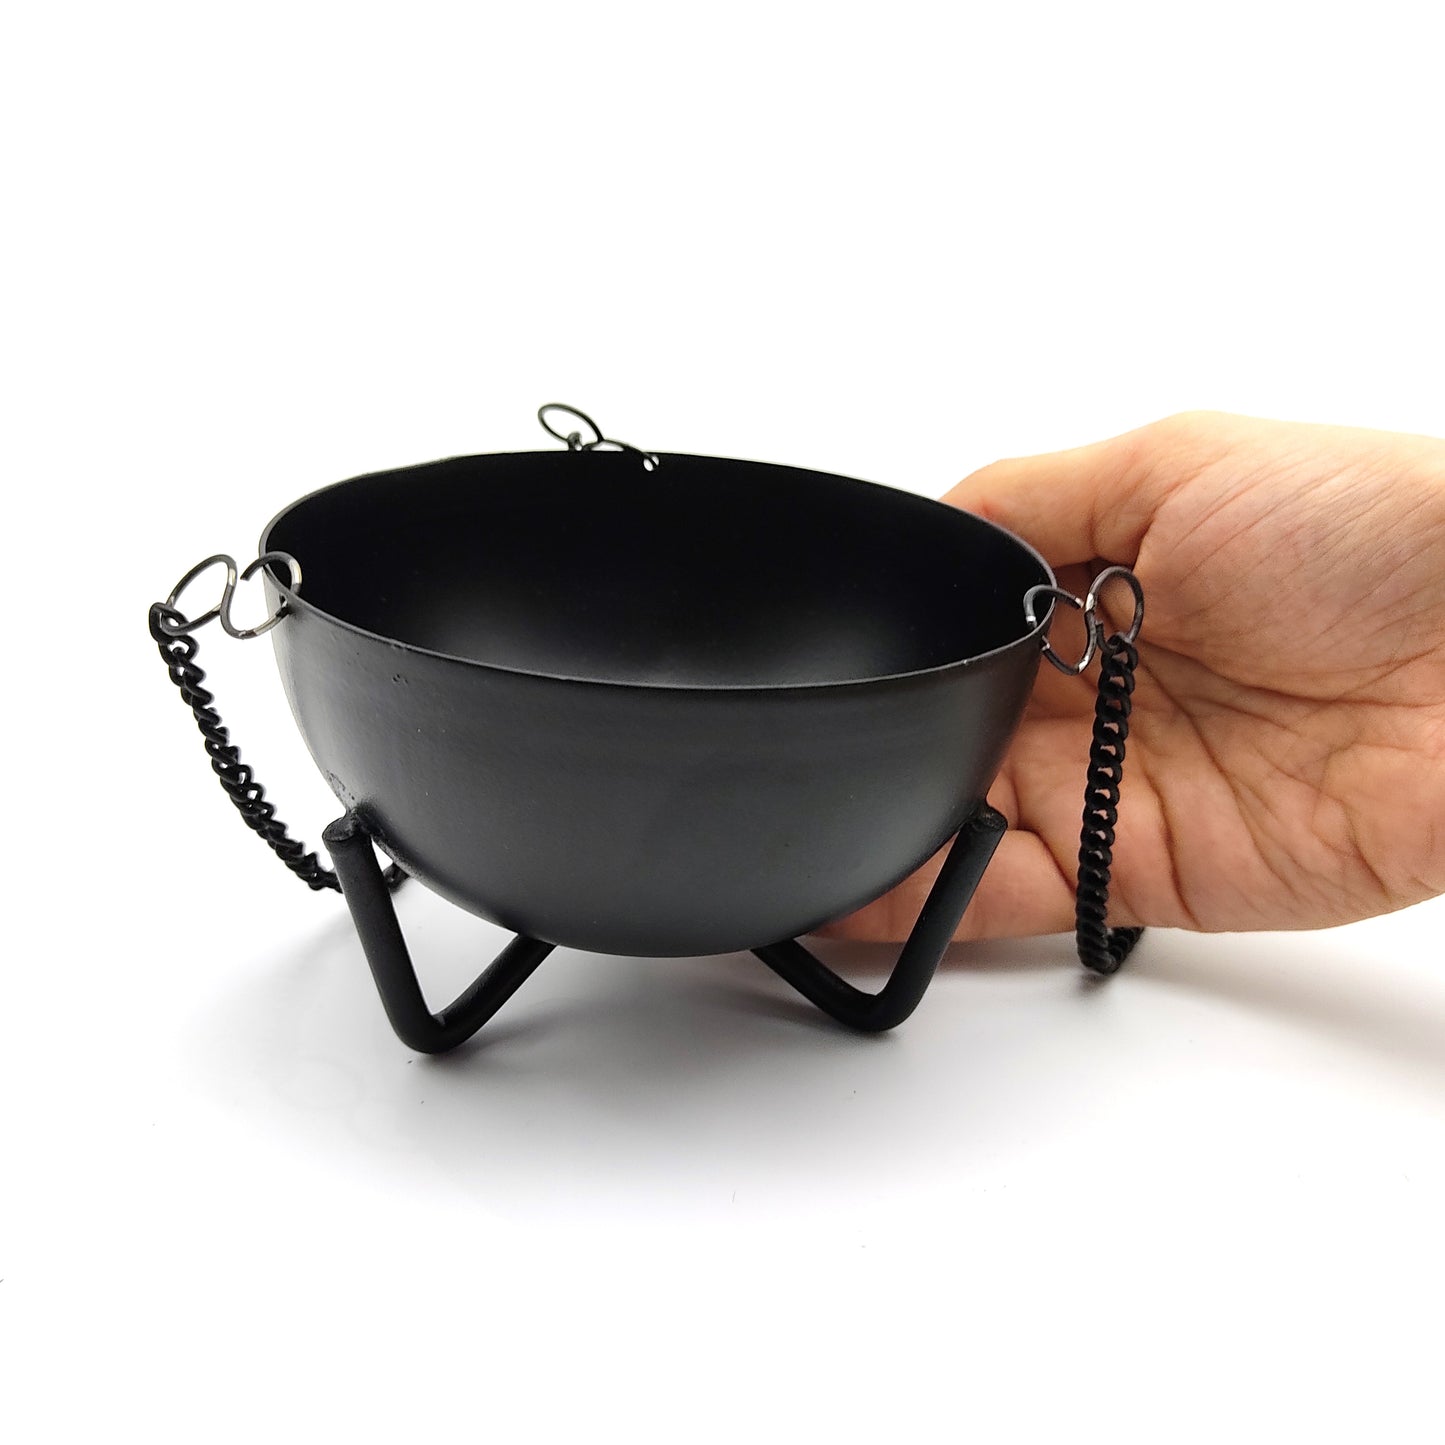 Hanging Black Cauldron Large Smudging Pot Coal Resin Incense Sage Burner